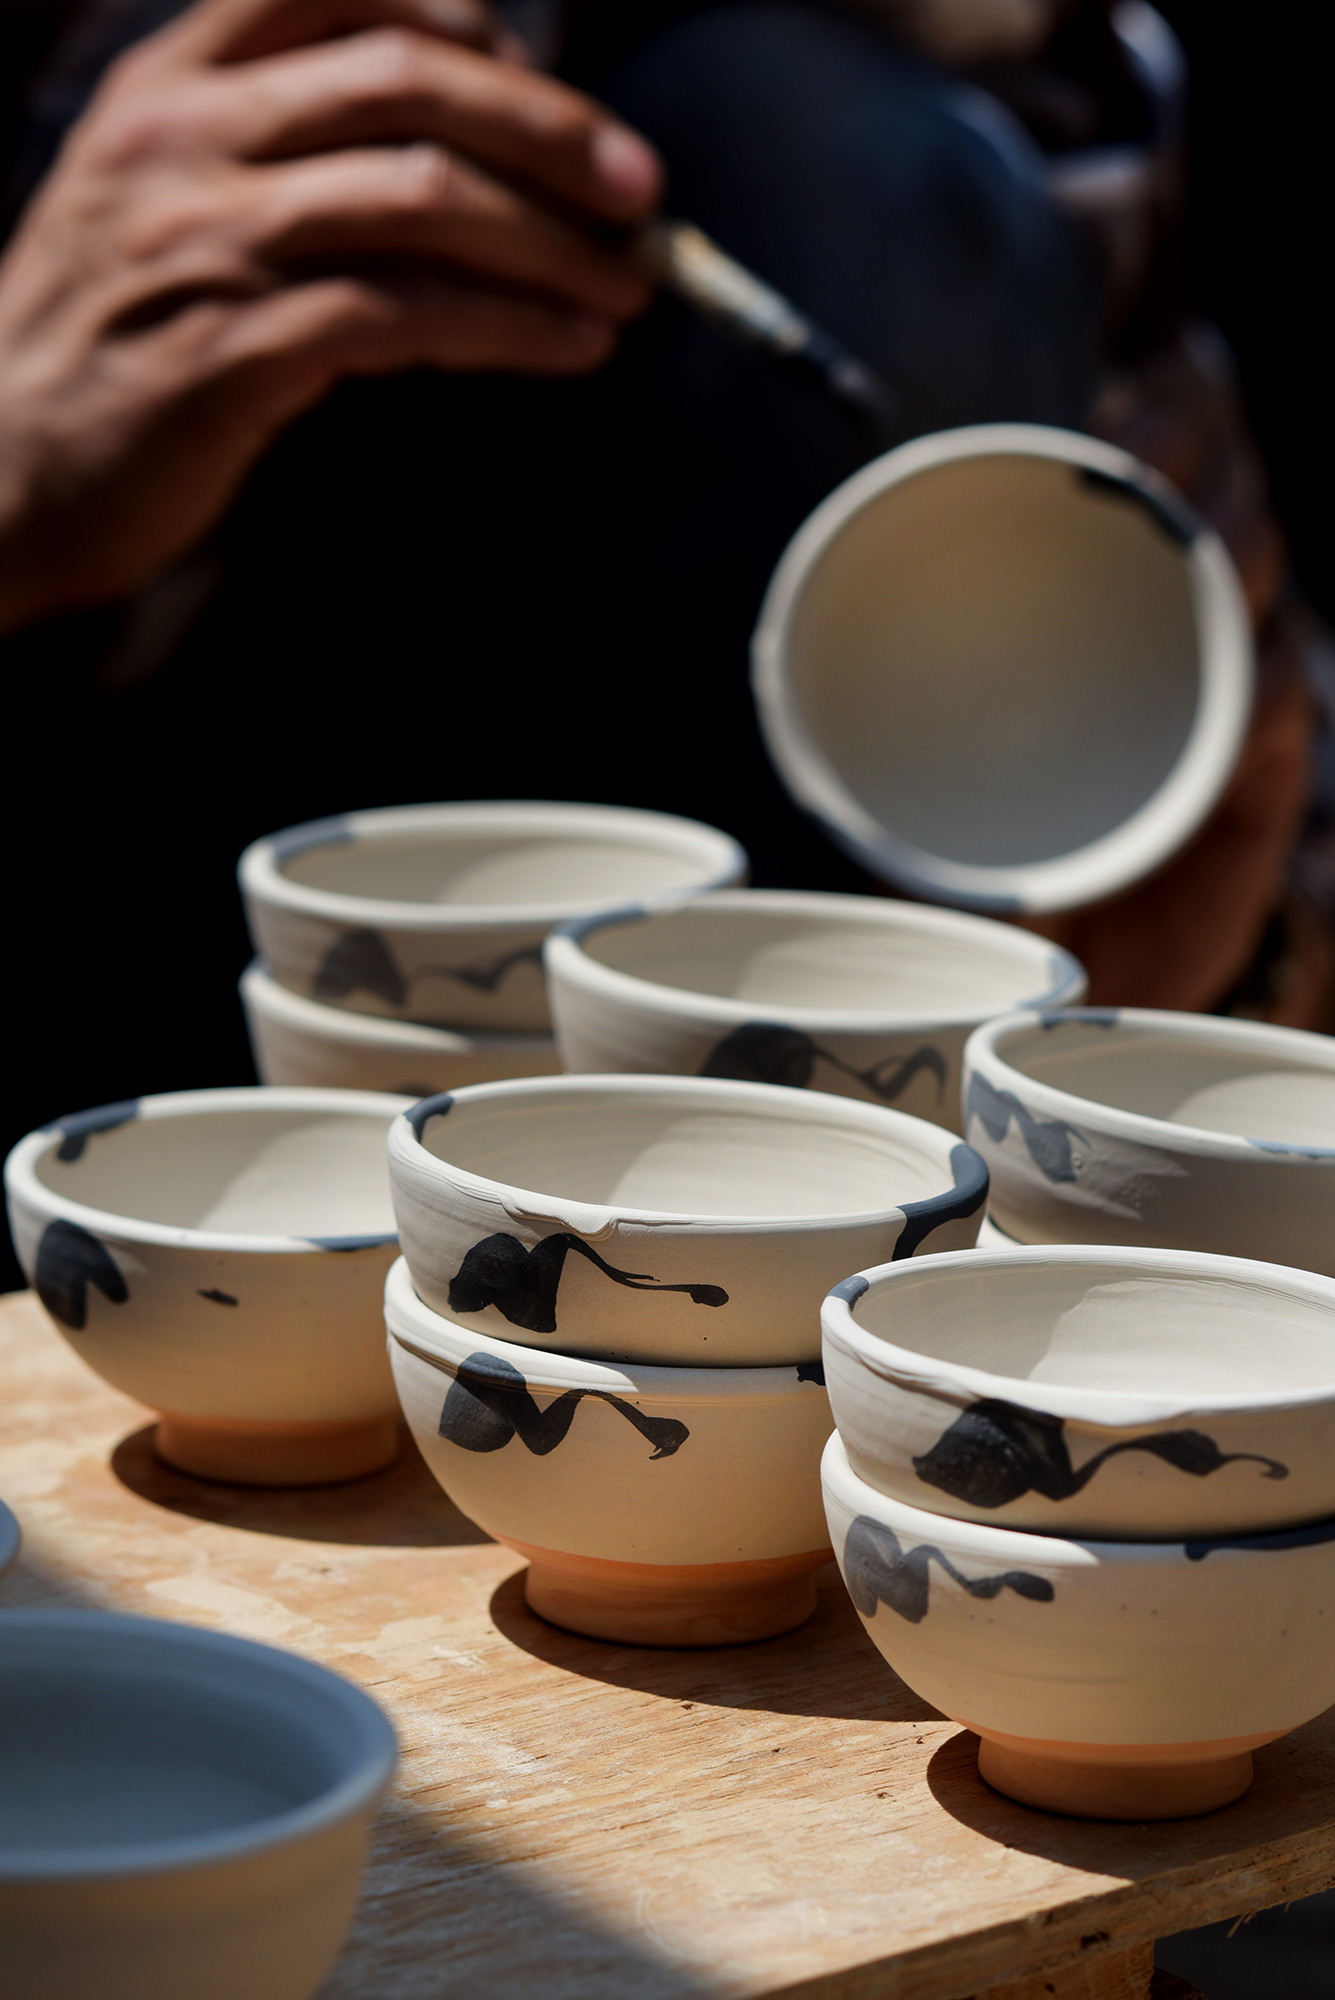  Hua Ning pottery, Wan yao village 